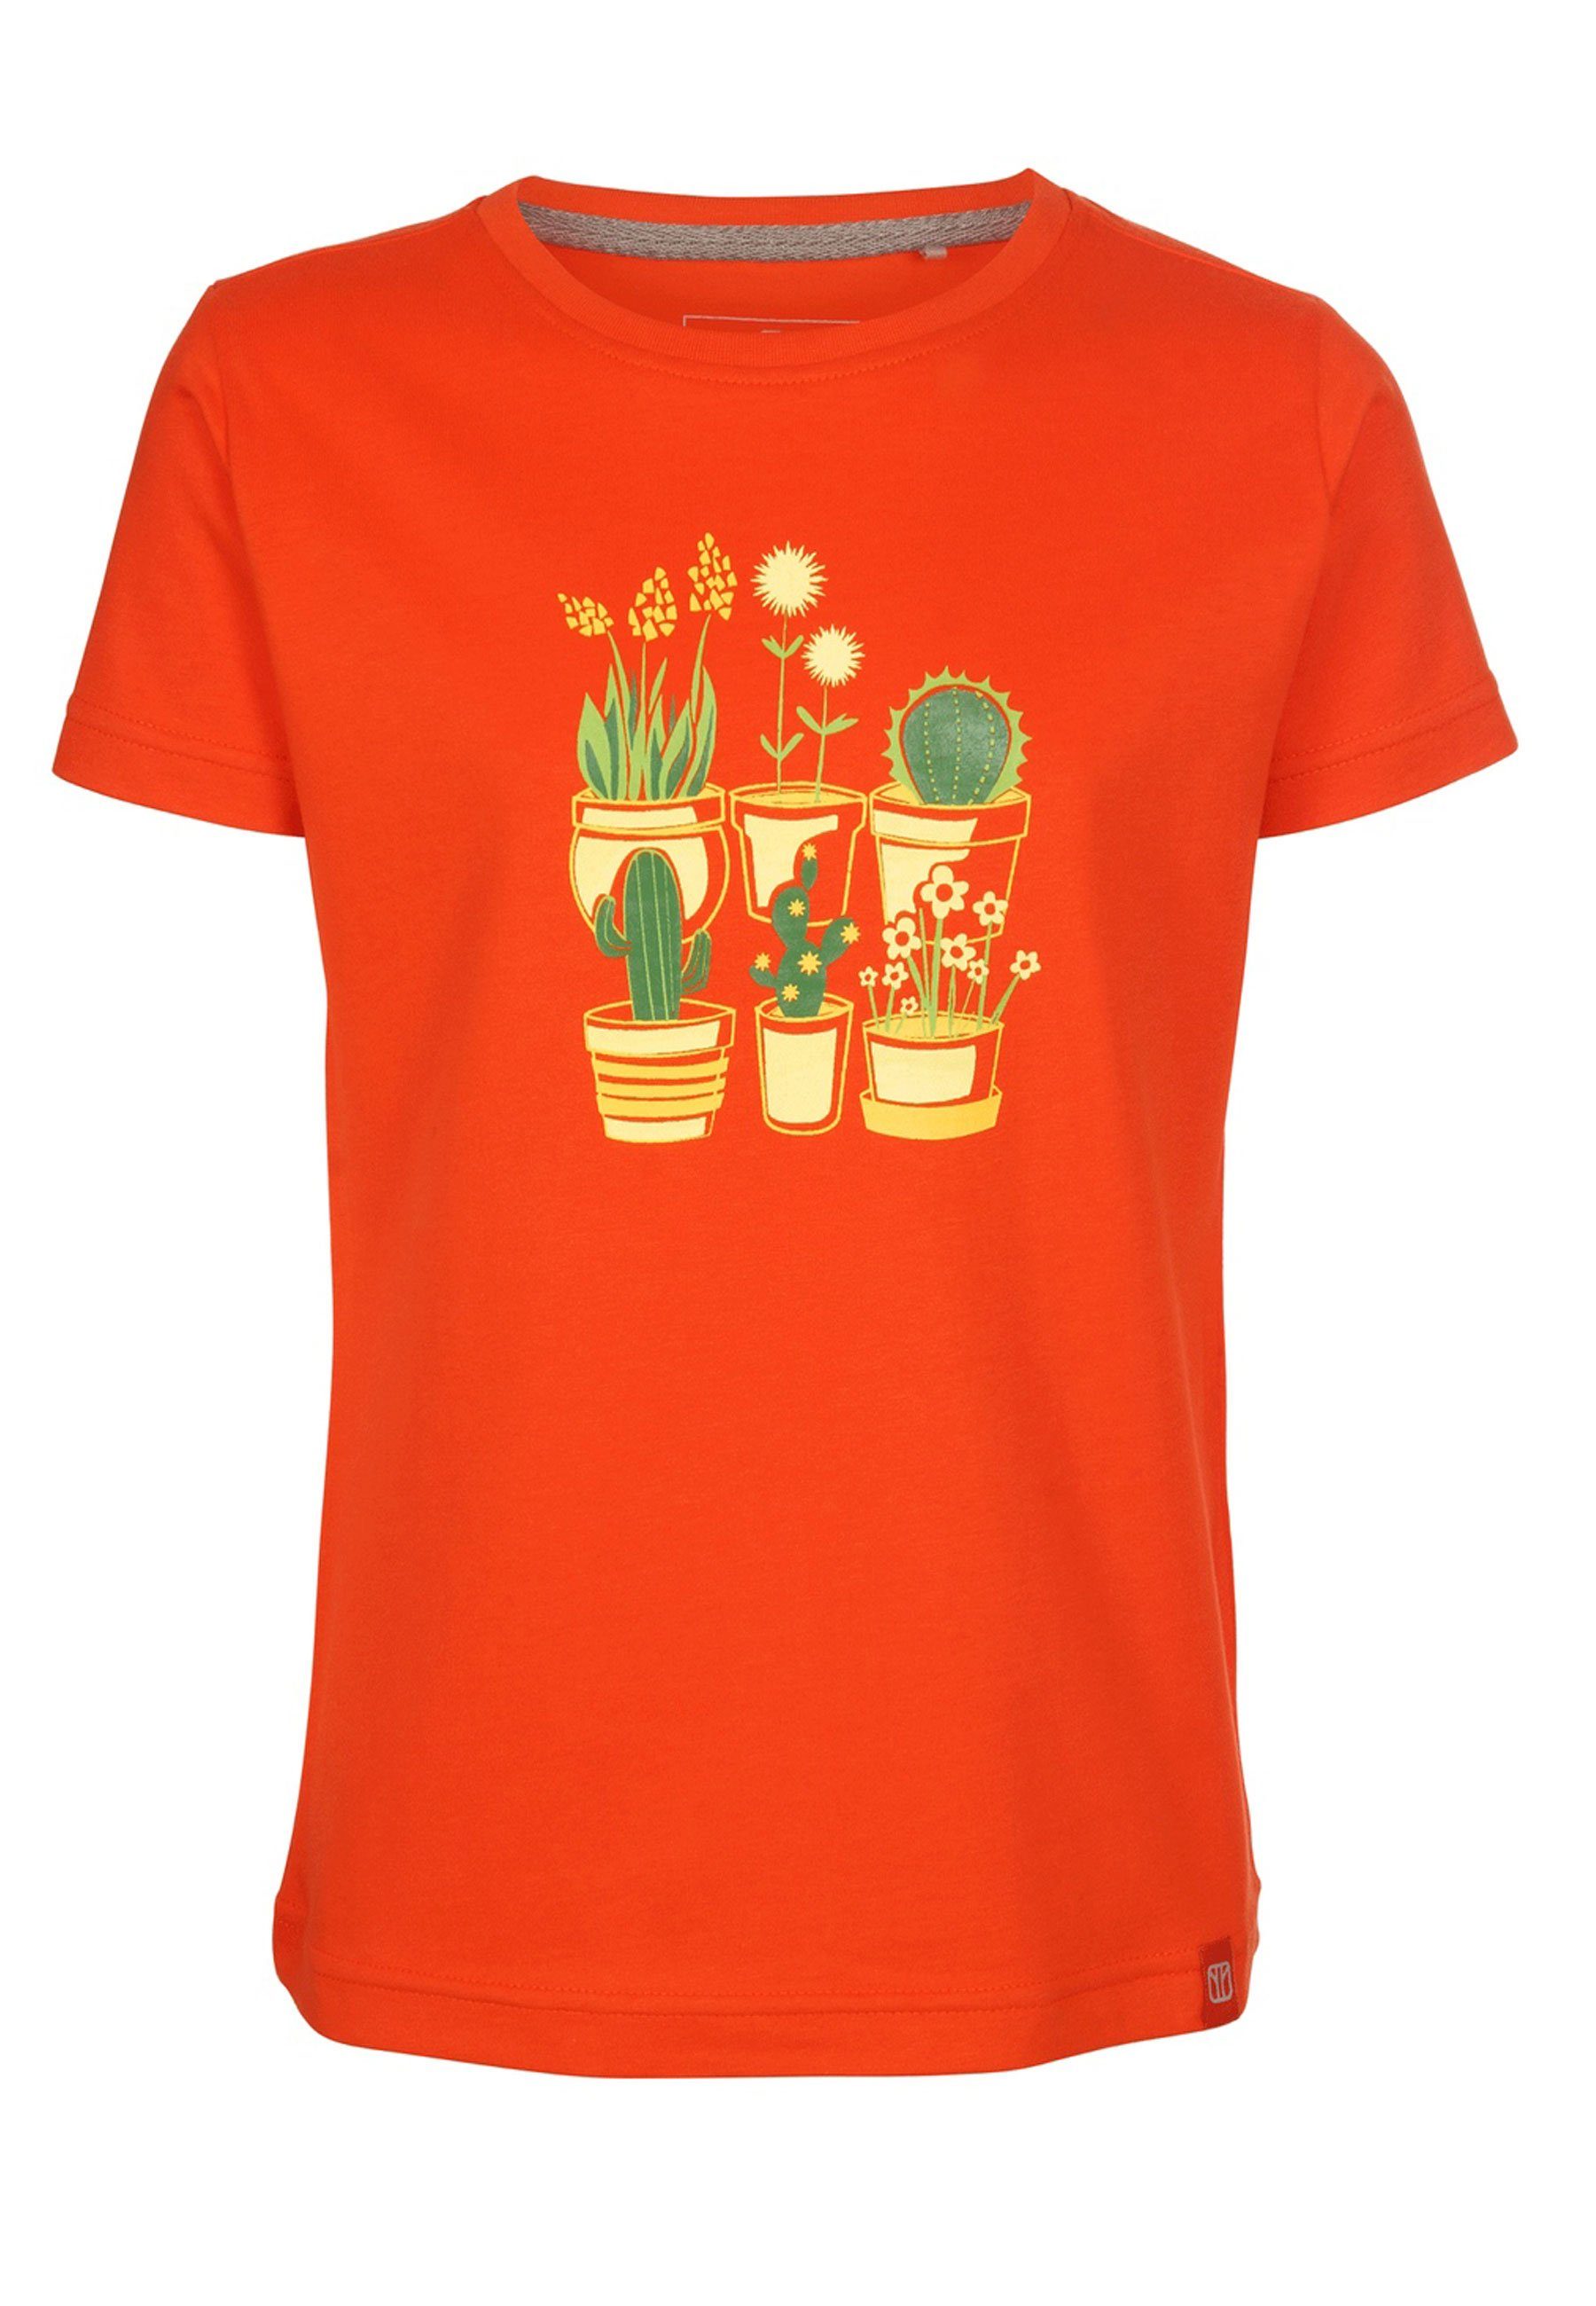 Kurzarm cherrytomato Brust T-Shirt Kaktus Blumen Print Jersey Plantsarefriends Elkline